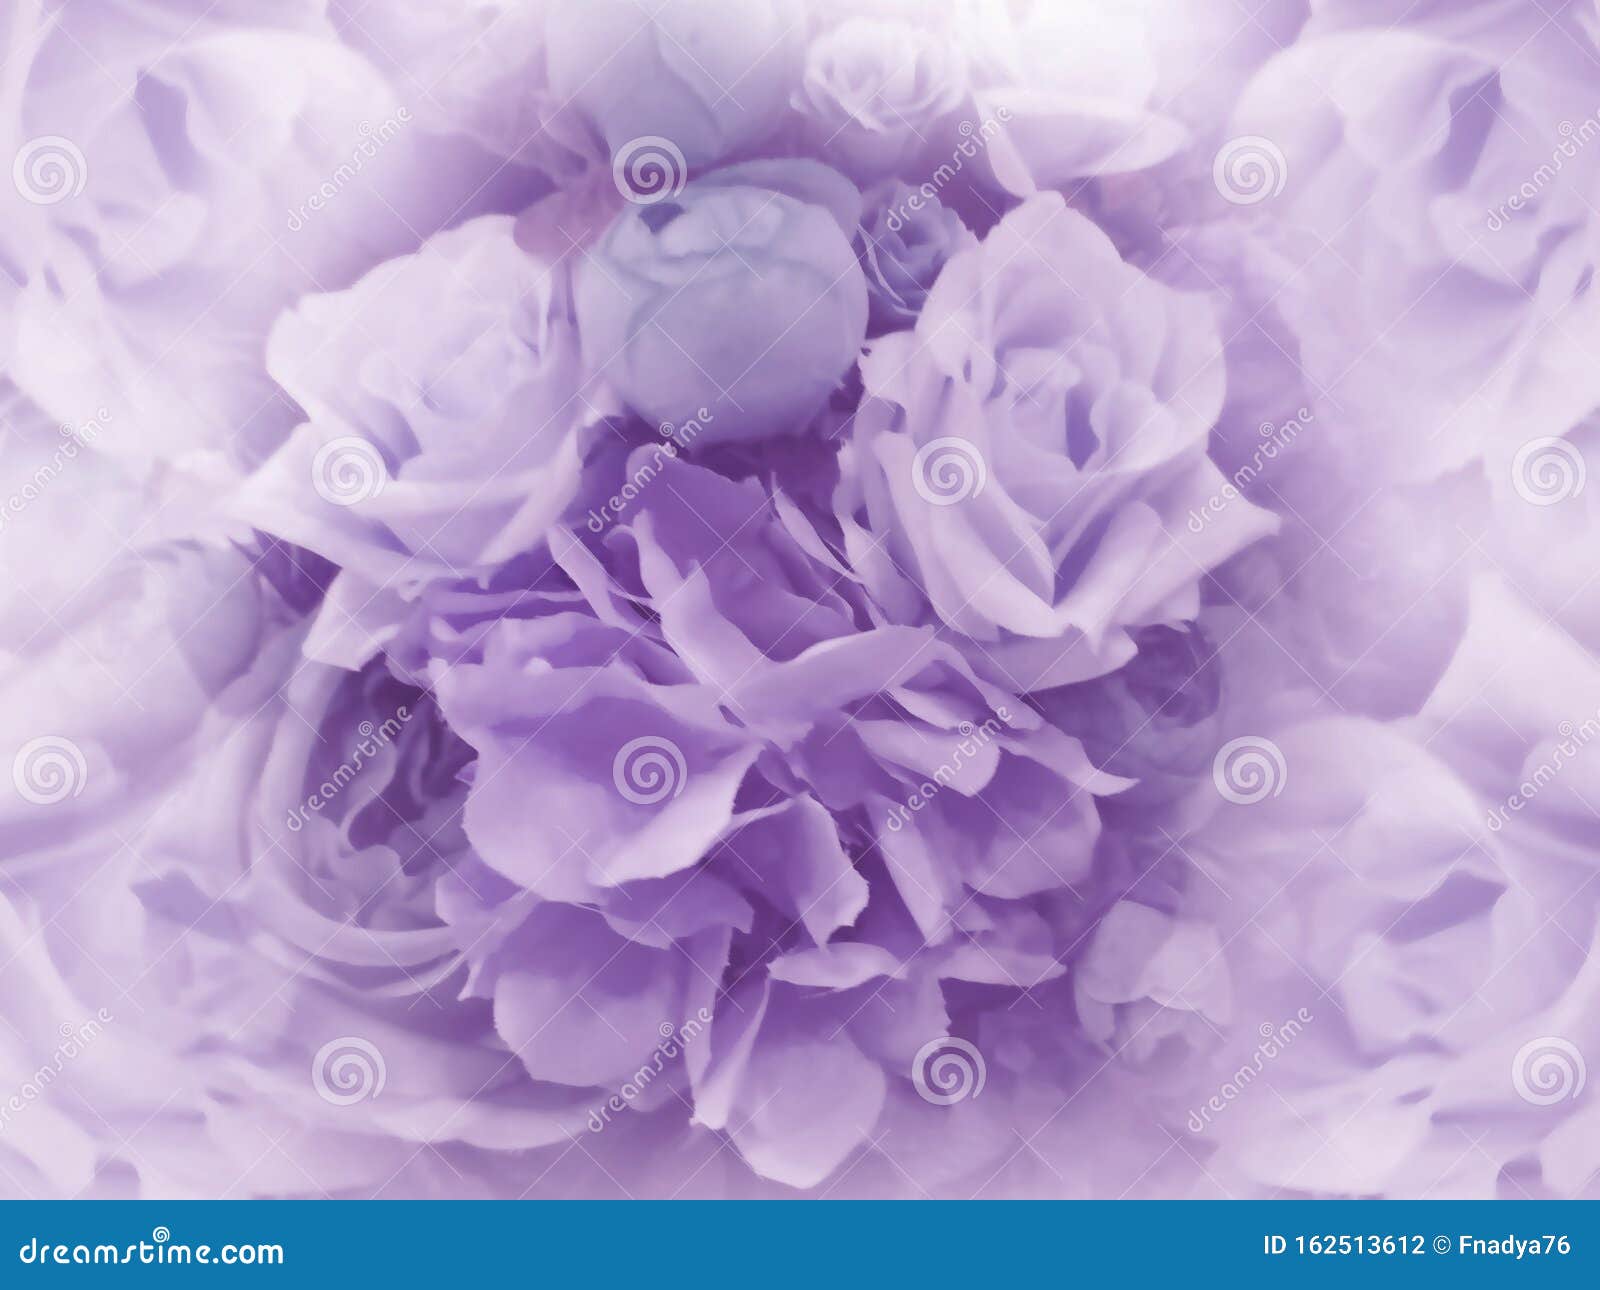 Hoa cổ điển màu tím nhạt: Hãy đắm chìm trong sức hút của màu tím nhạt cùng với những bông hoa cổ điển trên hình ảnh này. Với nét đẹp mang tính cổ điển đầy lãng mạn của hoa màu tím nhạt, bạn sẽ không thể rời mắt khỏi hình ảnh này.